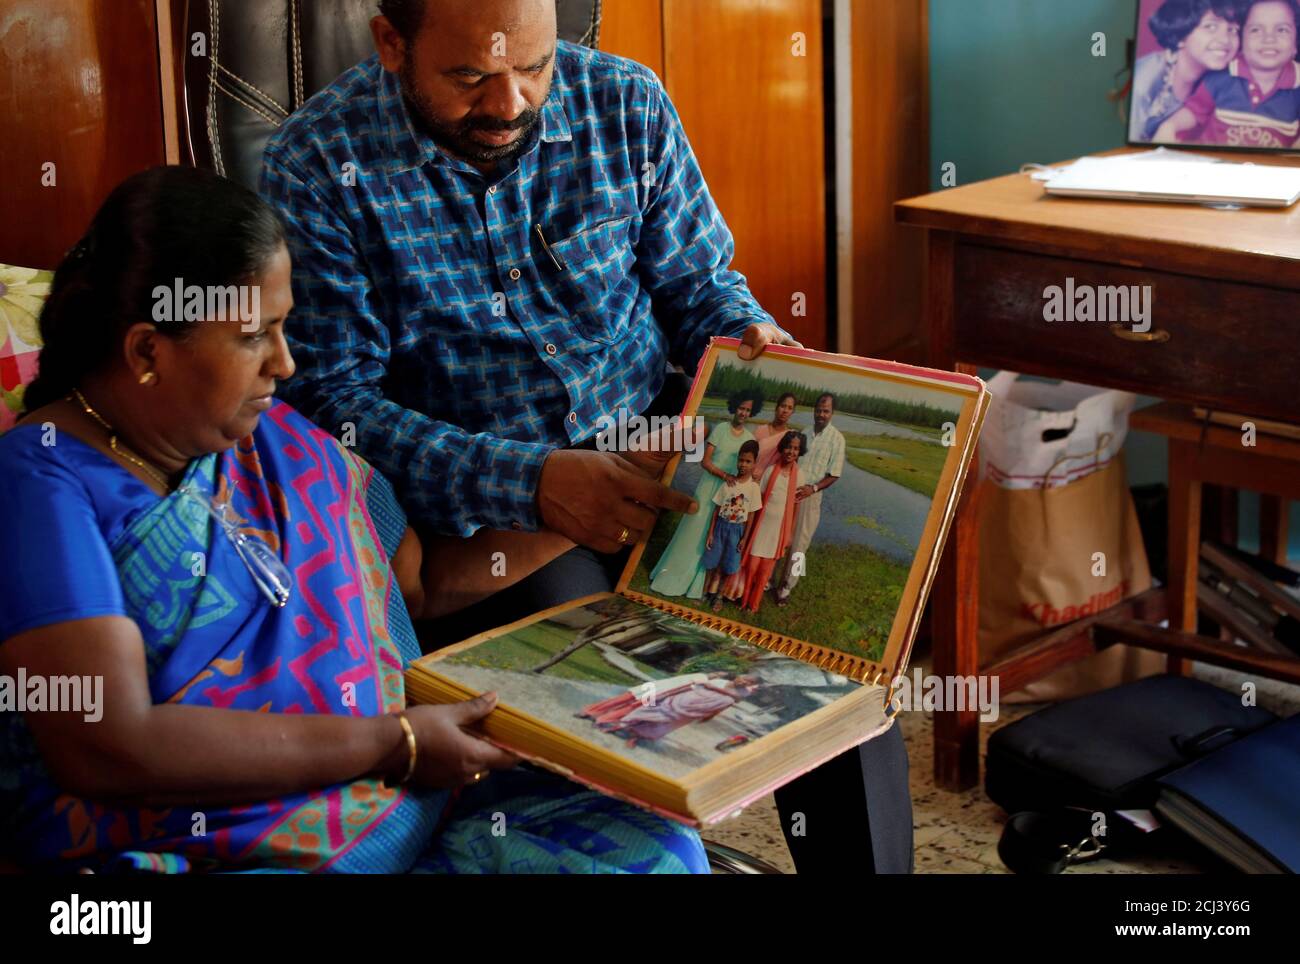 Karibeeran Paramesvaran y su esposa Choodamani, que perdió a tres niños en el tsunami de 2004, muestran su álbum familiar dentro de su casa que se han convertido en un hogar para niños huérfanos en el distrito de Nagapattinam en el estado sureño de Tamil Nadu, India, el 4 de diciembre de 2019. Foto tomada el 4 de diciembre de 2019. REUTERS/P. Ravikumar Foto de stock